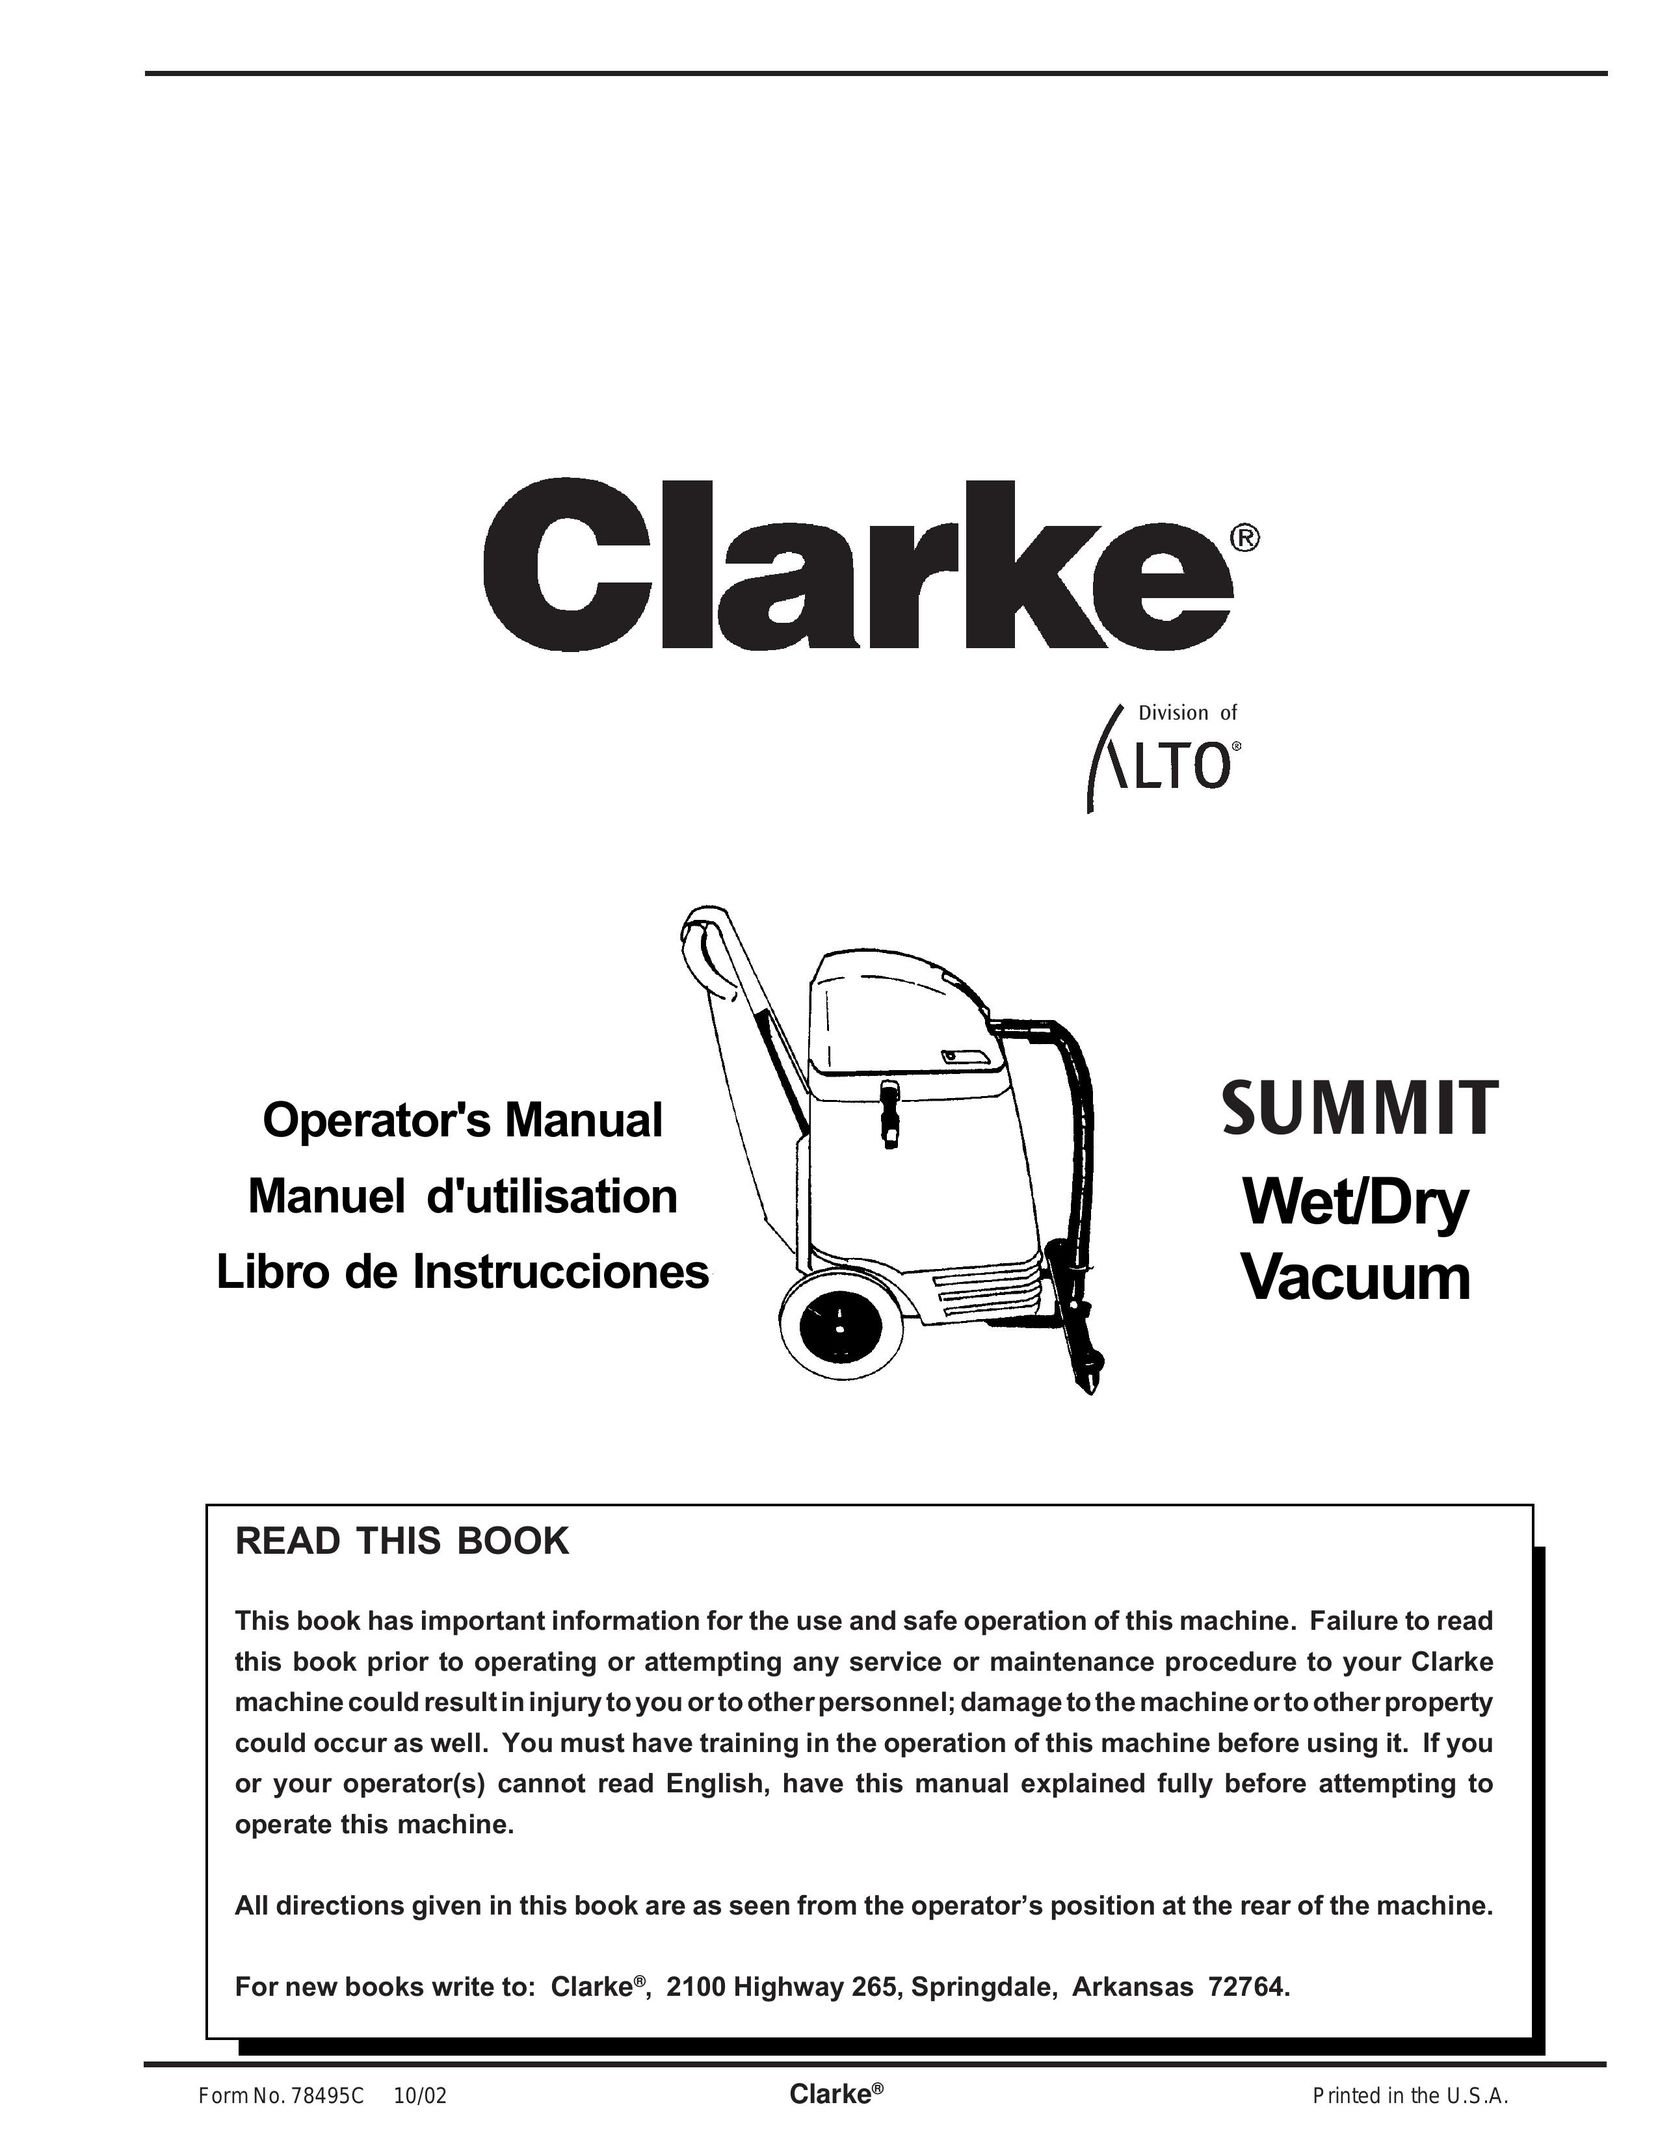 Clarke Wet/Dry Vacuum Vacuum Cleaner User Manual